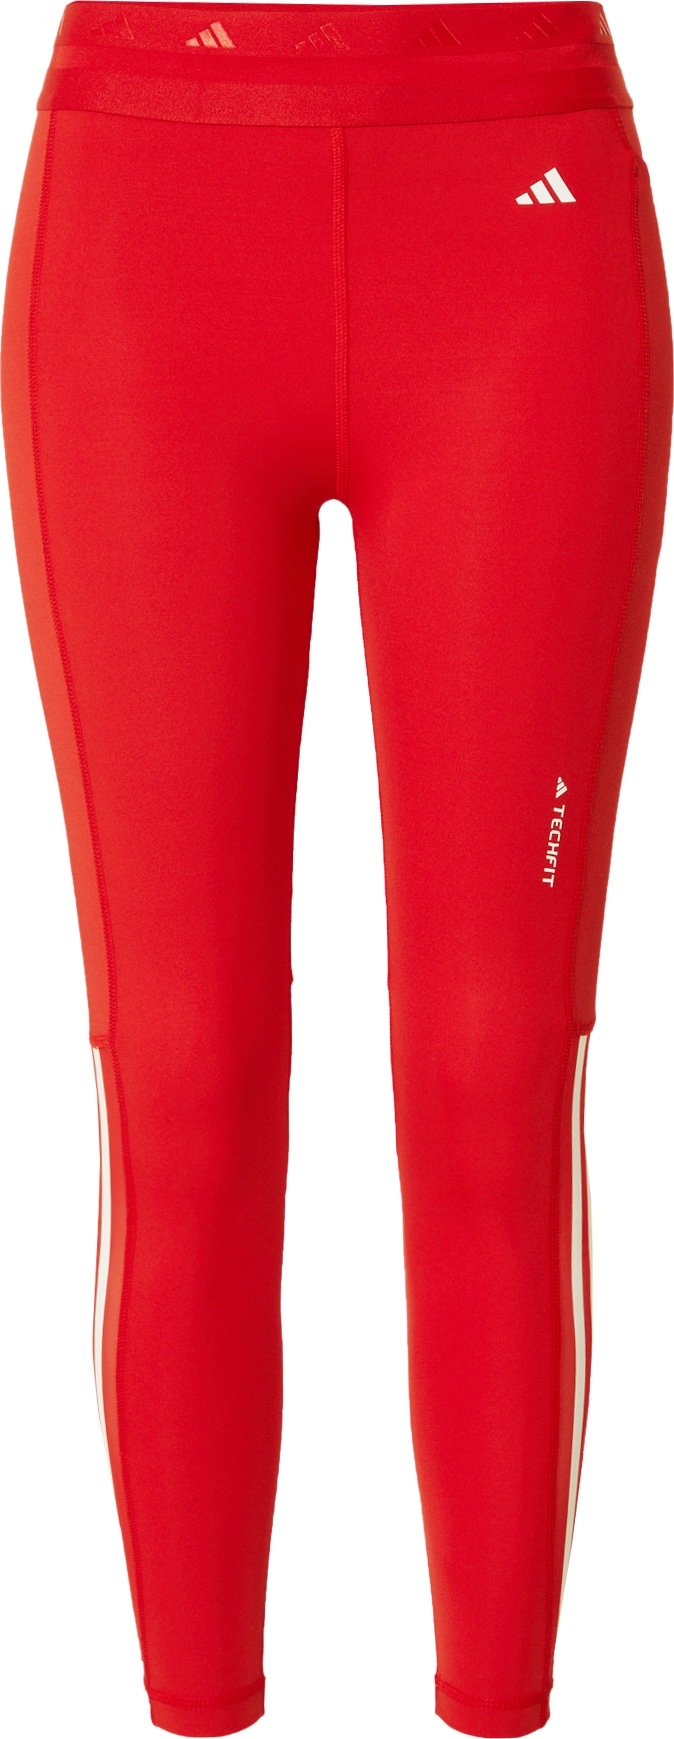 Sportovní kalhoty 'Techfit Hyperglam' adidas performance červená / bílá